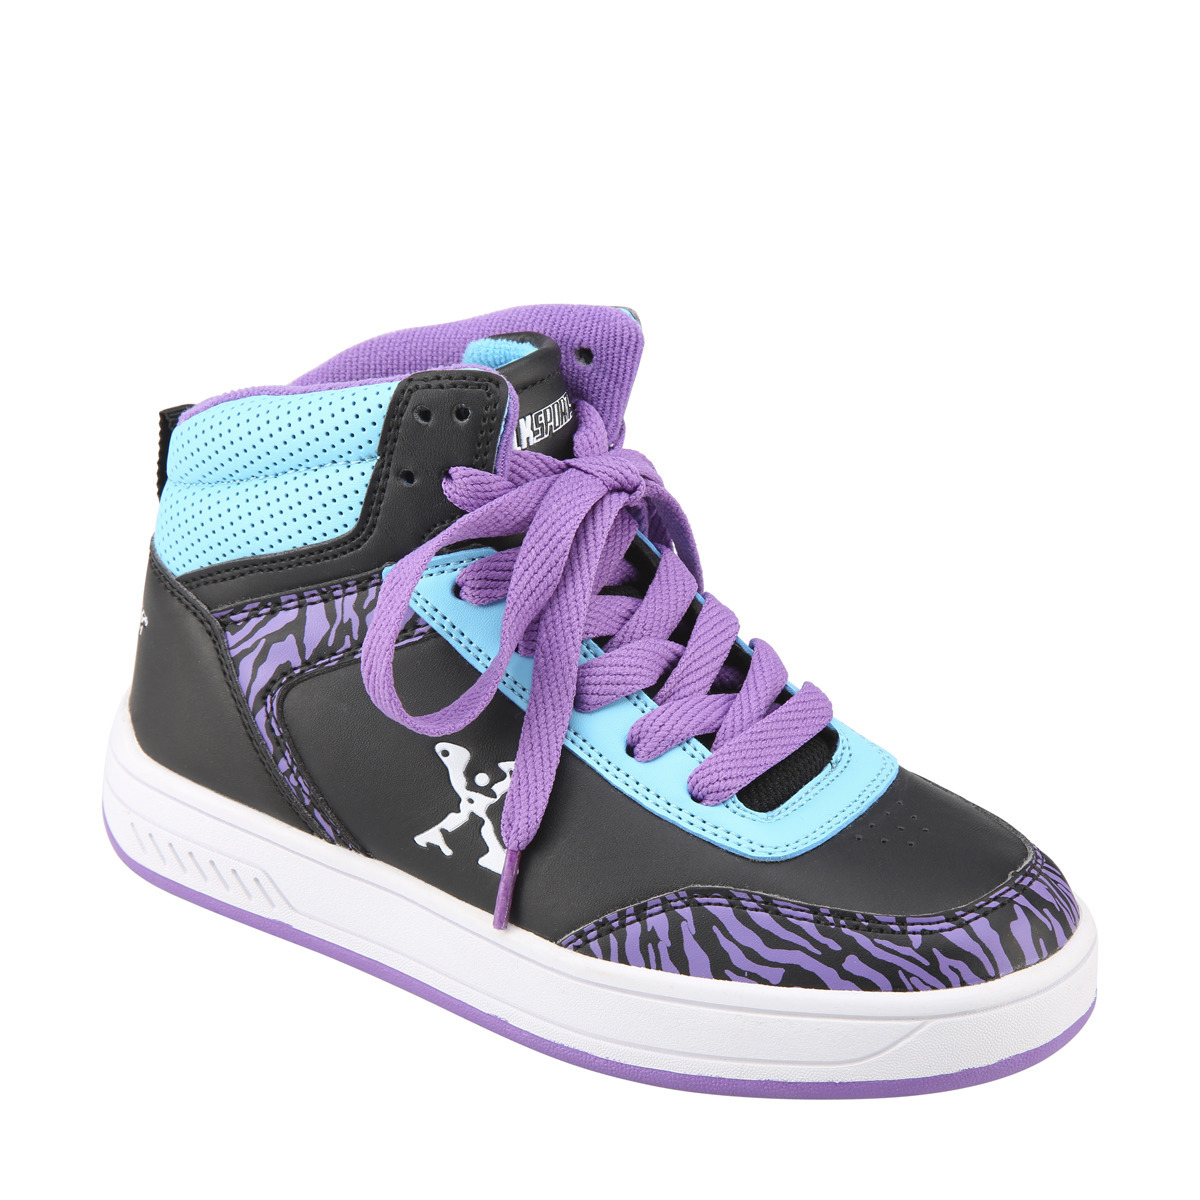 Sidewalk Sports Size 1 Purple Skate Shoes